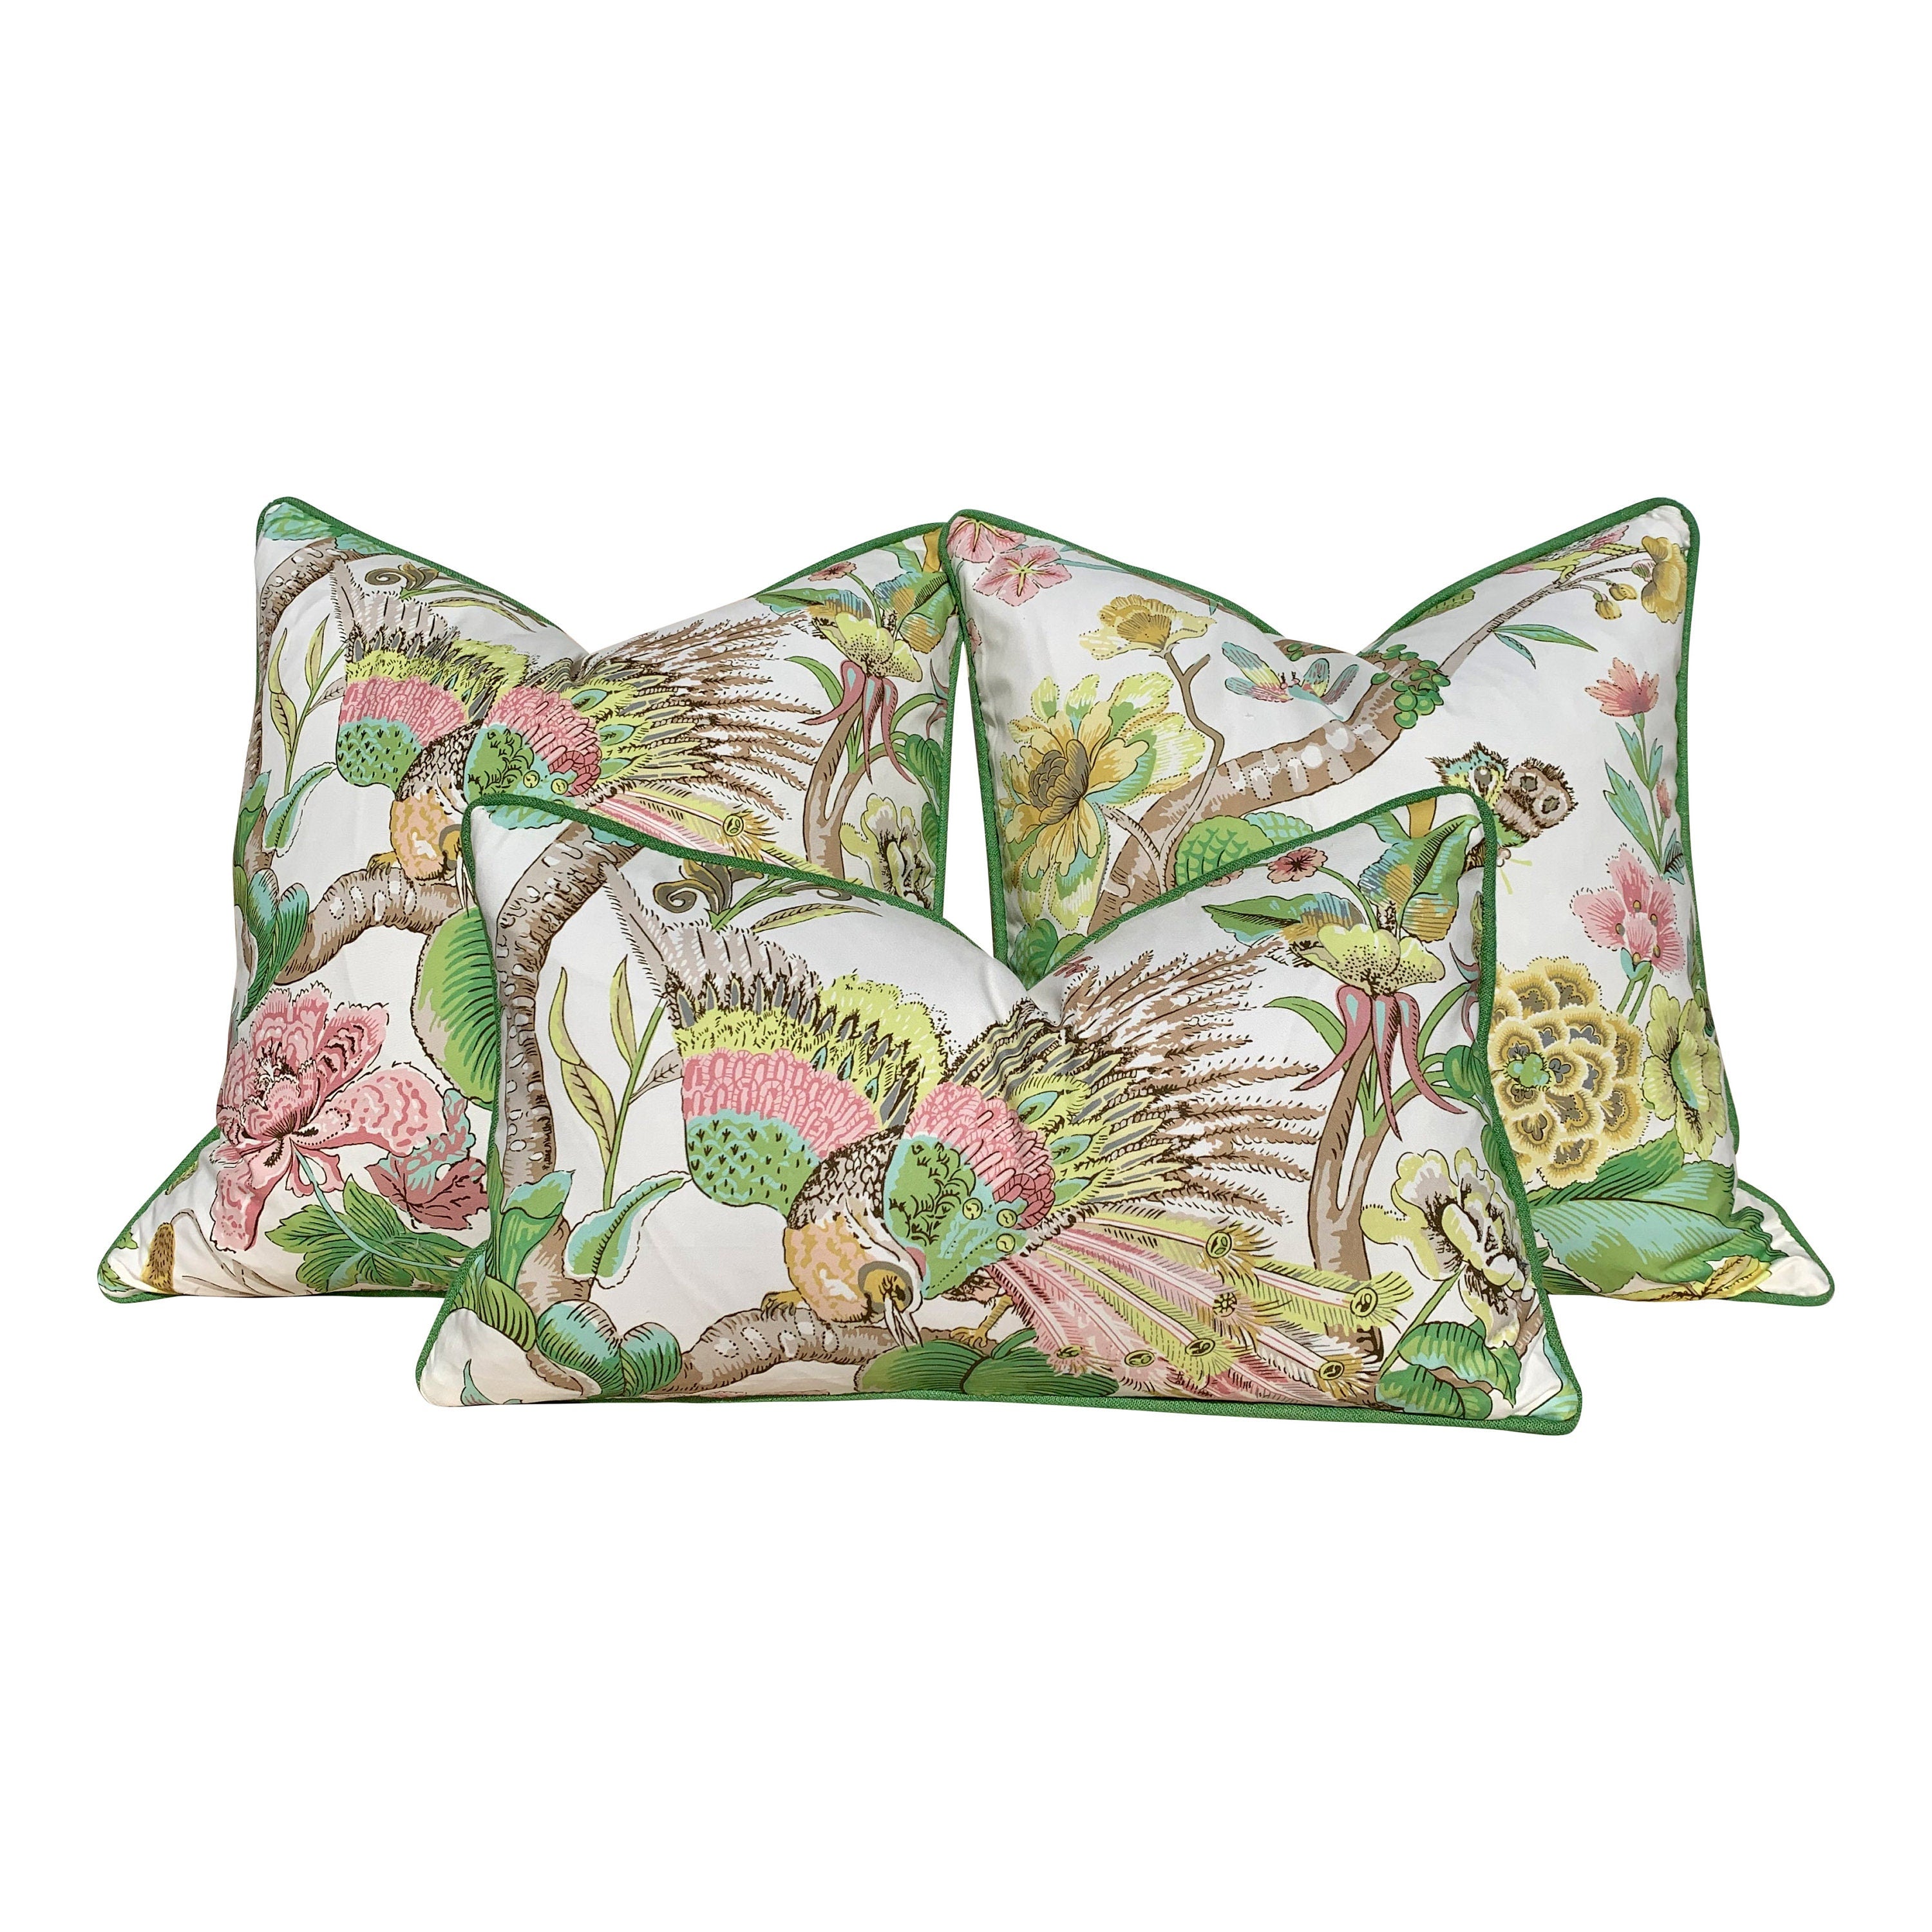 Schumacher Cranley Garden Pillow. Floral Lumbar Pillow, Green Yellow Pillow, Euro Sham 26"x26", Fauna Pillow Cover